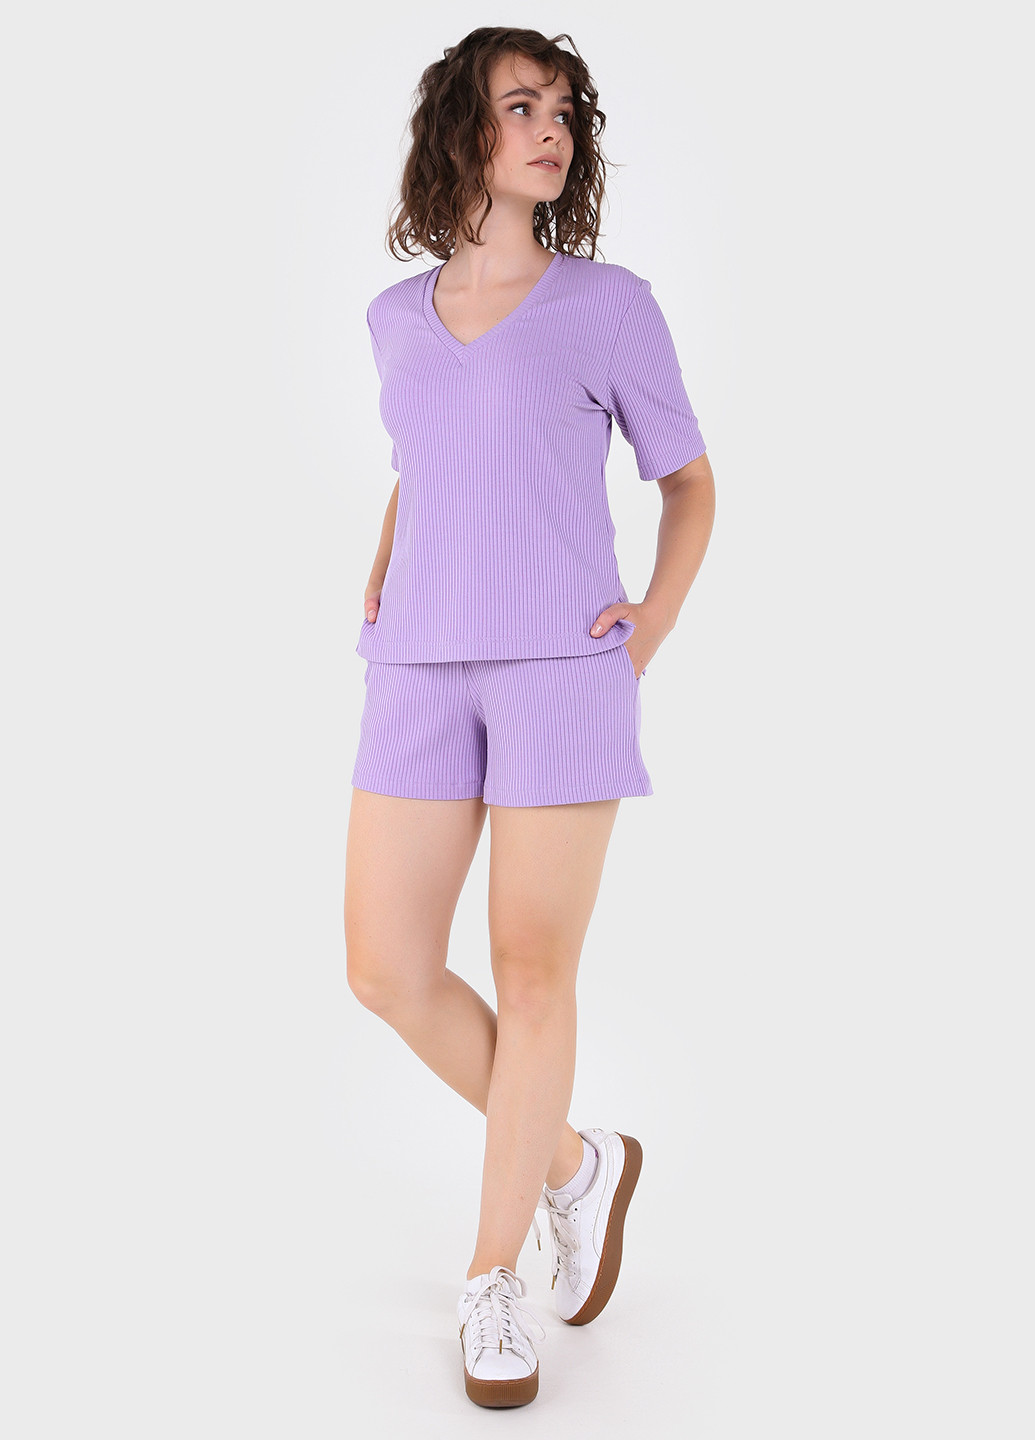 Сиреневая летняя легкая футболка женская в рубчик 800000027 с коротким рукавом Merlini Корунья